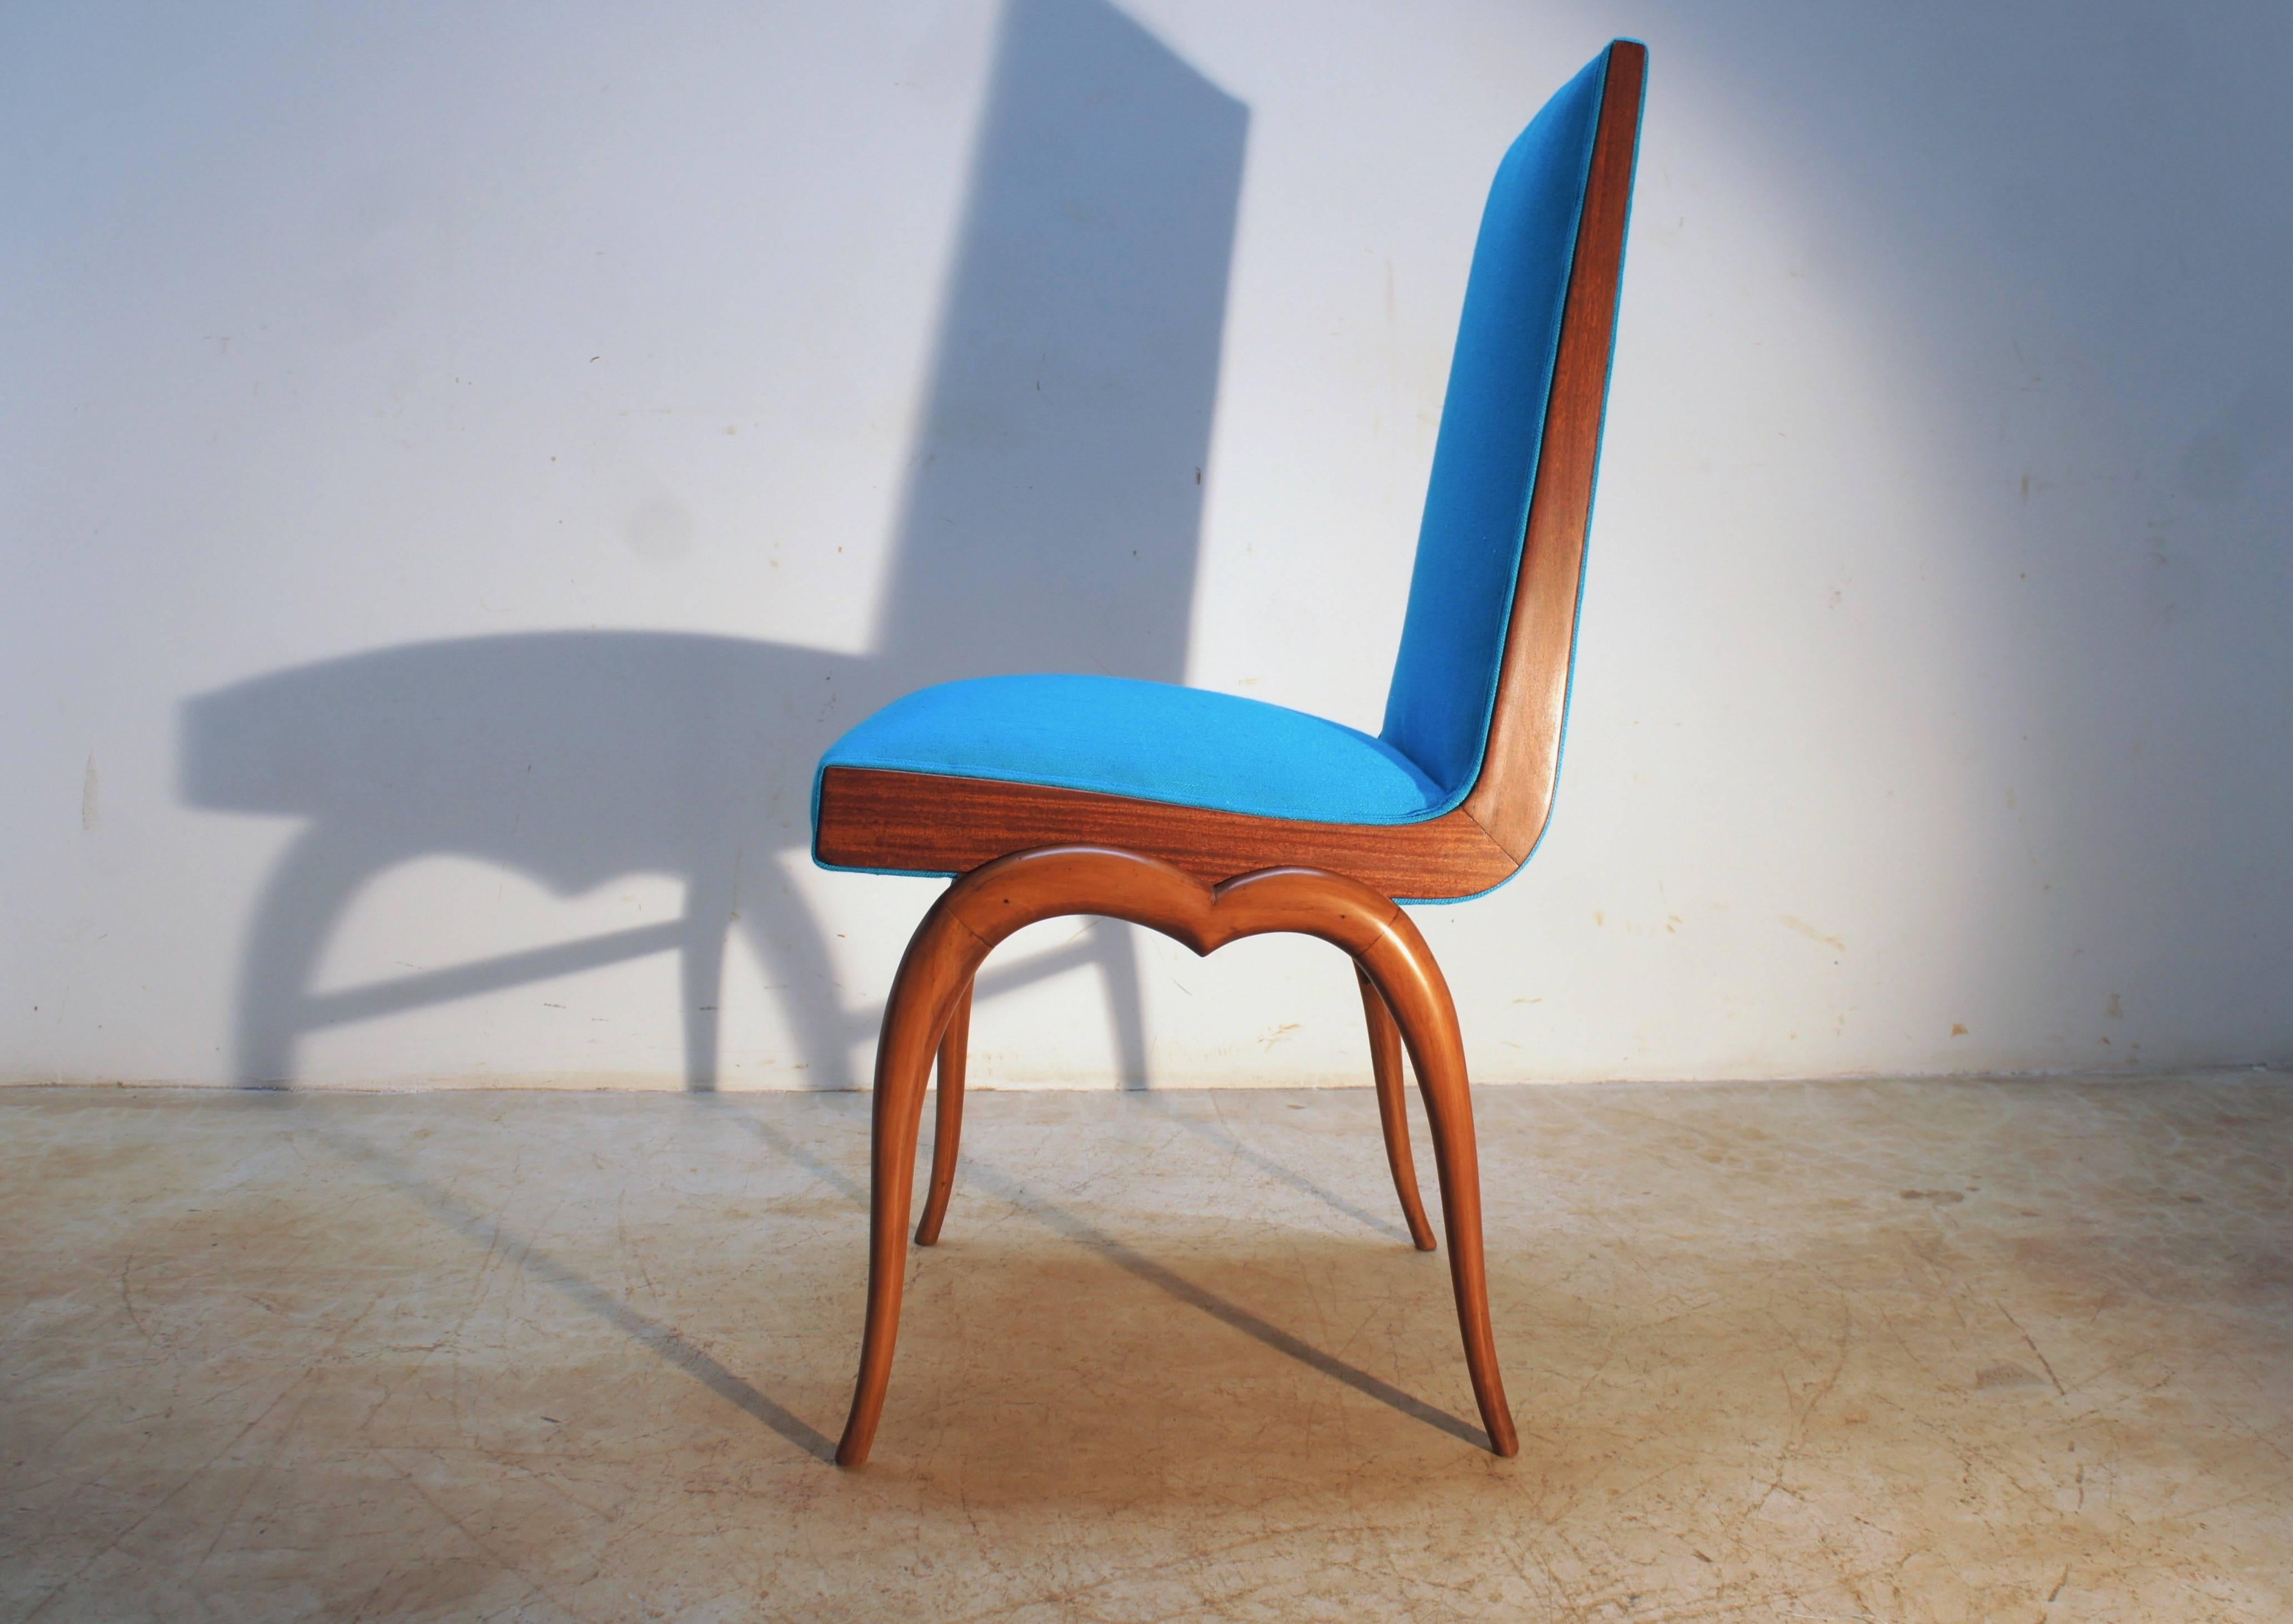 Ensemble de huit chaises bleues Giuseppe Scapinelli en bois de caviuna doré. Ces chaises ont été conçues et produites en très petite quantité au milieu des années 1950 par l'architecte et designer brésilien d'origine italienne Giuseppe Scapinelli.